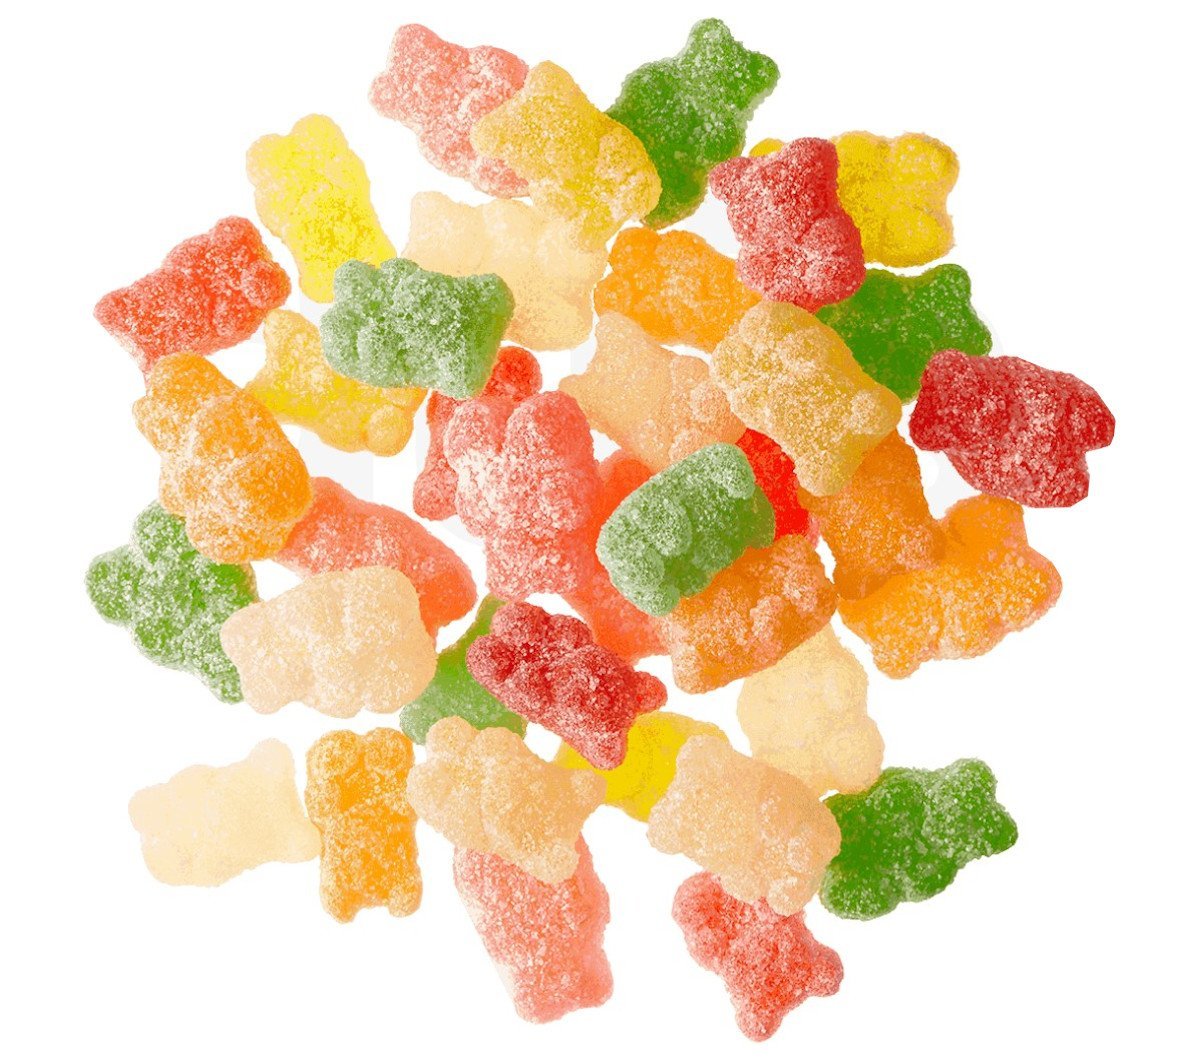 sour-gummy-bears.jpg